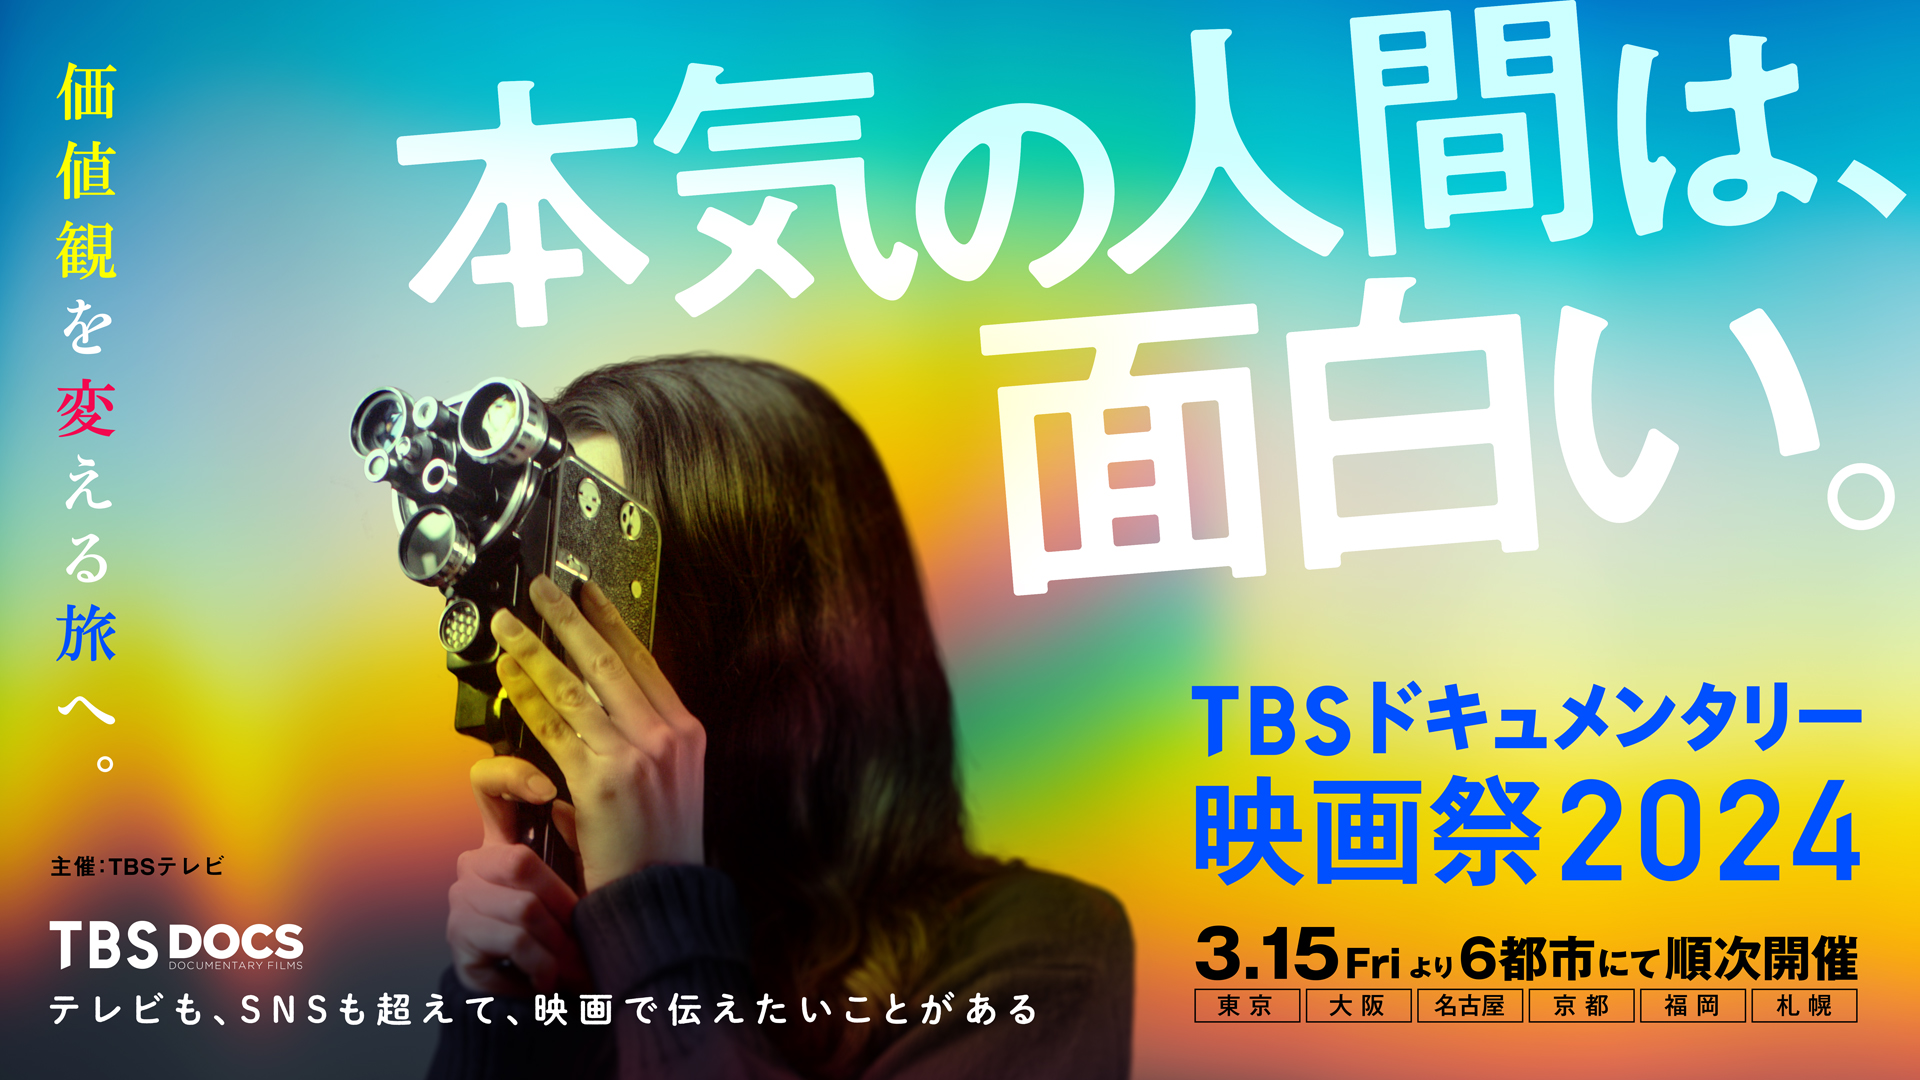 第4回 TBSドキュメンタリー映画祭2024 2024年3月15日より全国6都市にて開催決定!